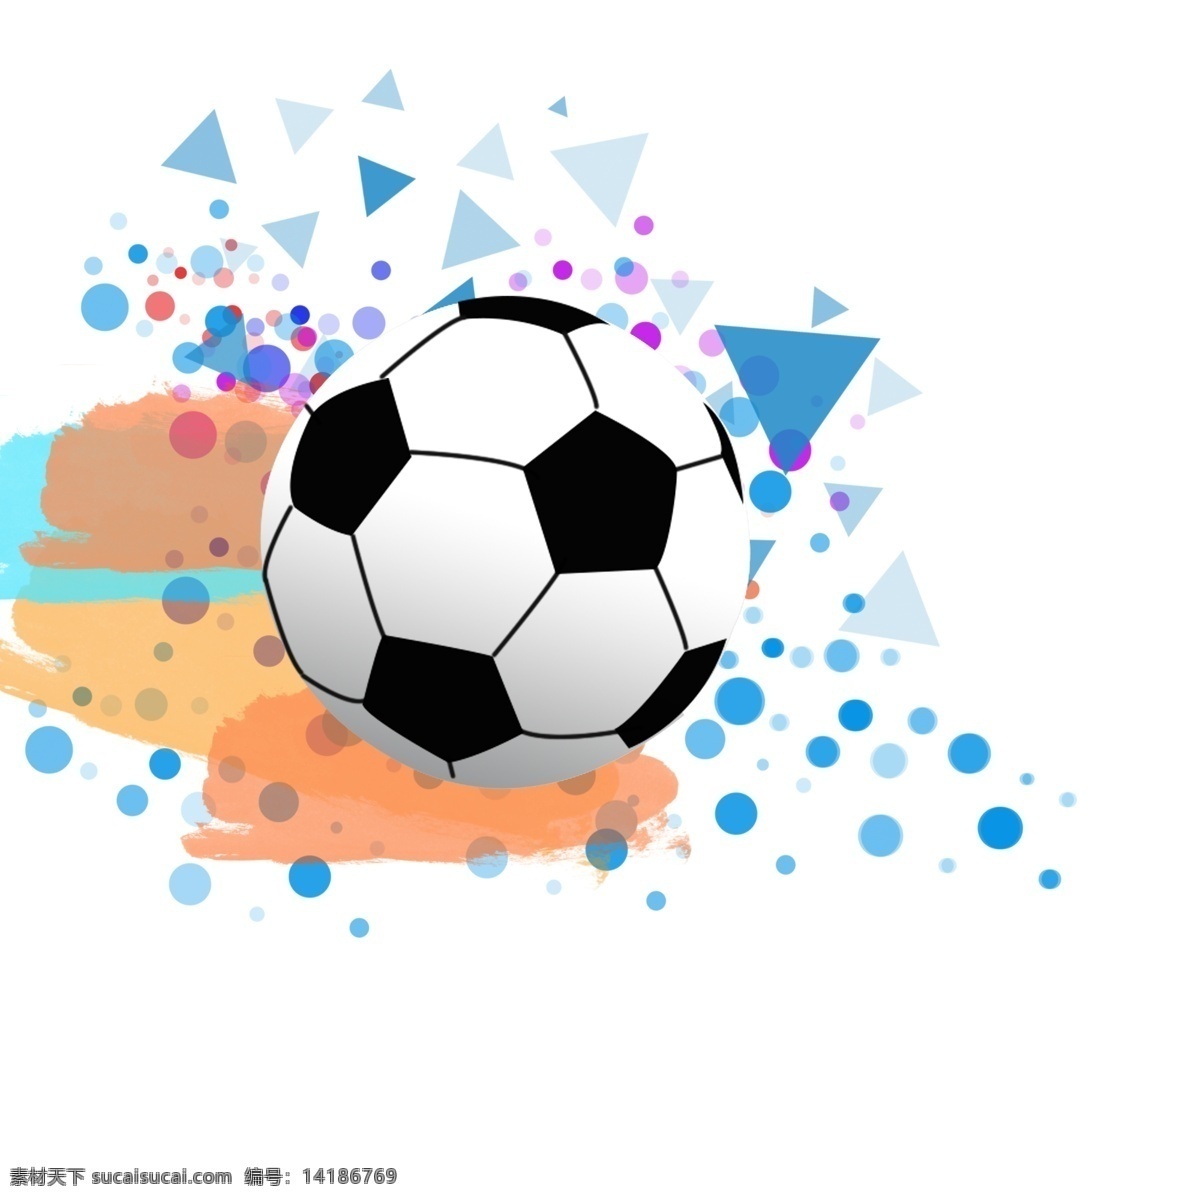 世界杯 足球 手绘 炫 酷 矢量图 比赛 体育 背景 时尚 潮流 插画 免扣 水彩 斑点 小清新卡通 体育运动 文化艺术